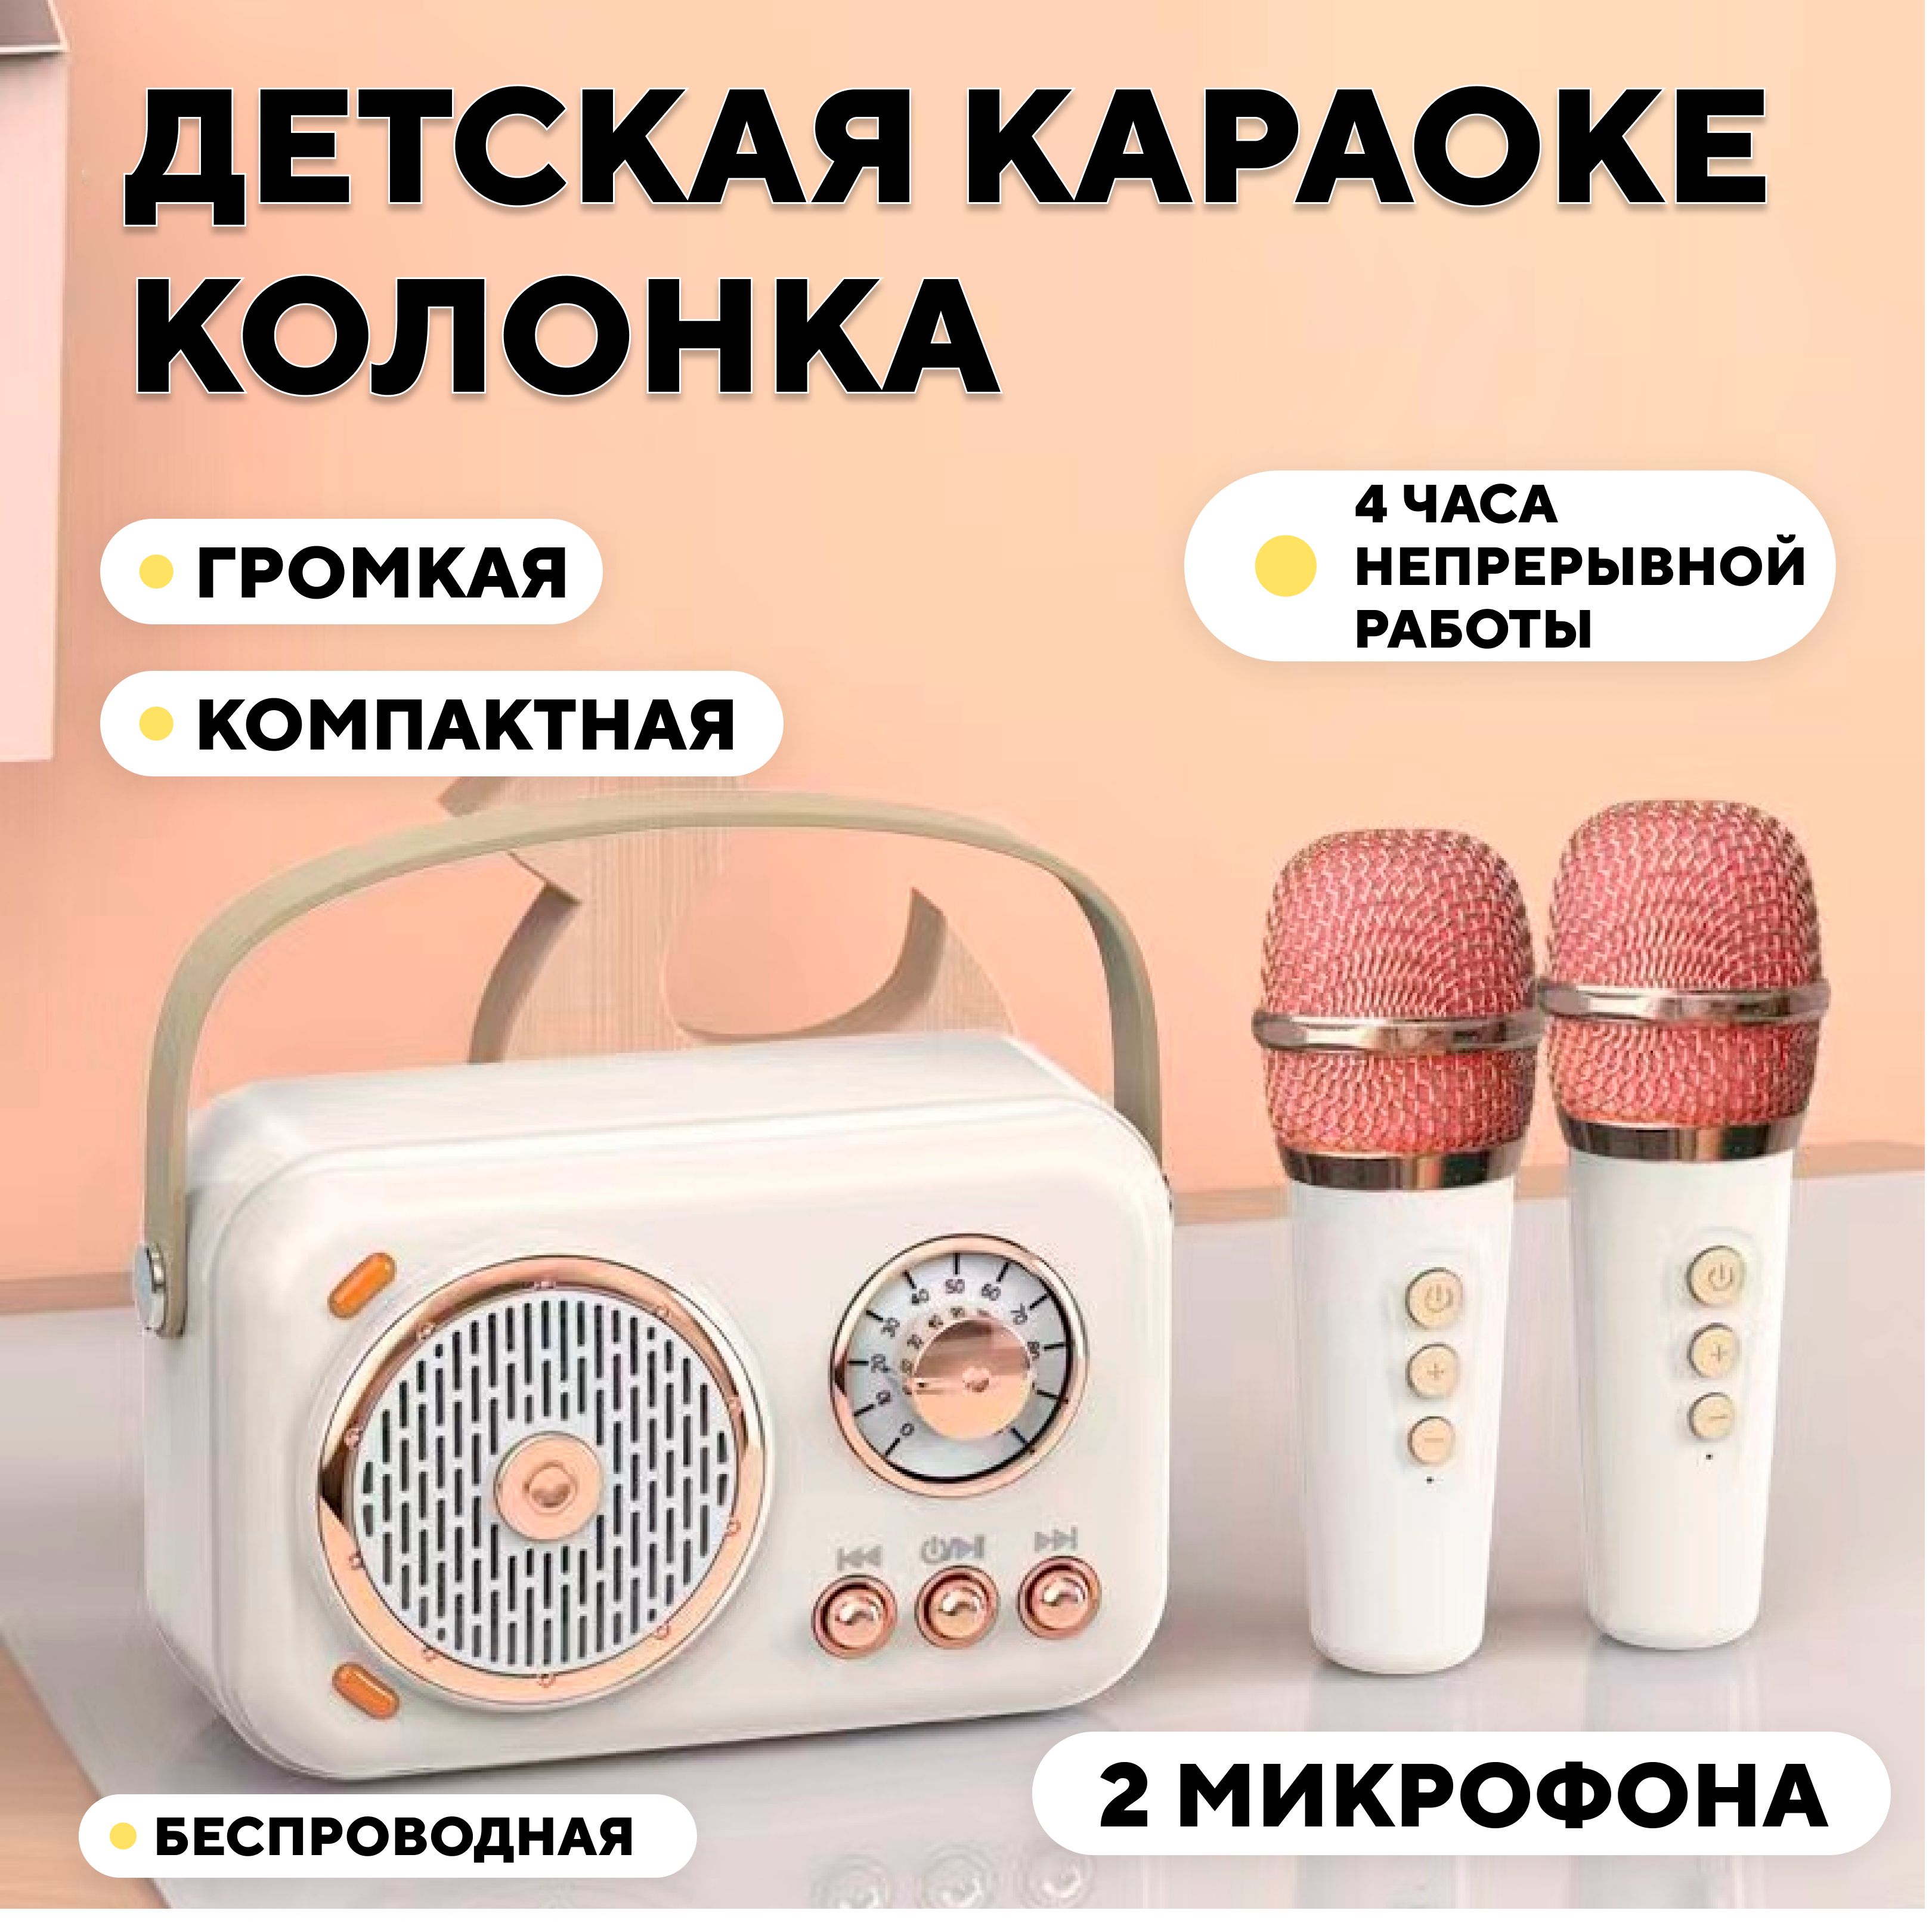 Детская караоке колонка, блютуз станция с микрофоном (кремовый цвет, 2  микрофона) - купить с доставкой по выгодным ценам в интернет-магазине OZON  (1171023033)